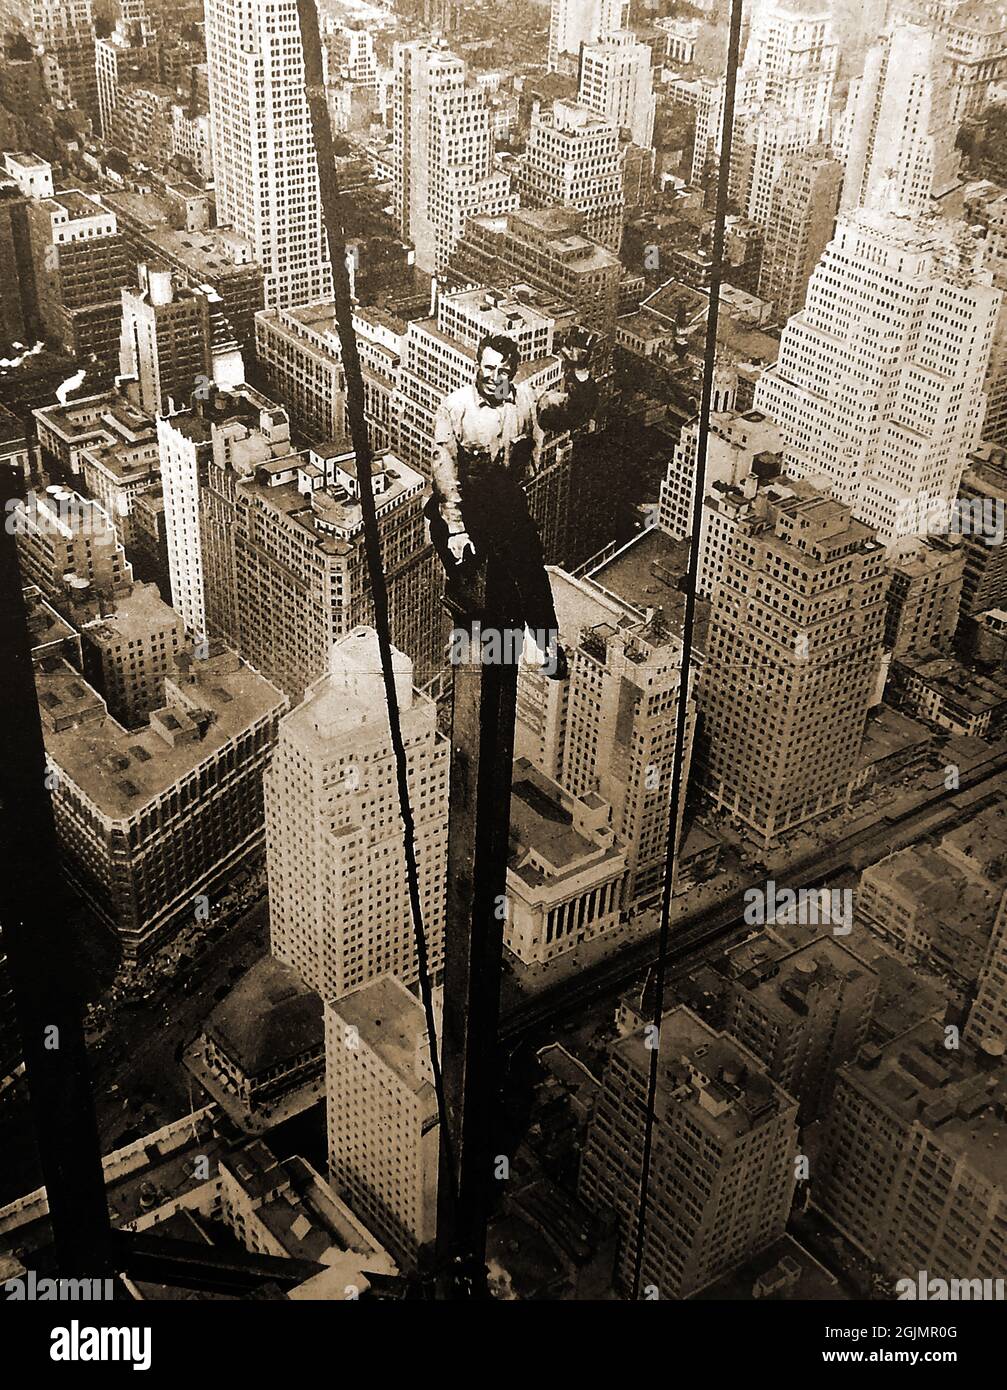 Il lavoratore degli anni '30 Carl Russel ha fotografato durante la costruzione dell'85° piano dell'Empire state Building seduto su una trave verticale senza alcuna caratteristica di sicurezza. Il grattacielo art deco a Manhattan, New York City, Stati Uniti d'America. E 'stato progettato da Shreve, Lamb & Harmon e costruito fbetween1930 al 1931. Foto Stock